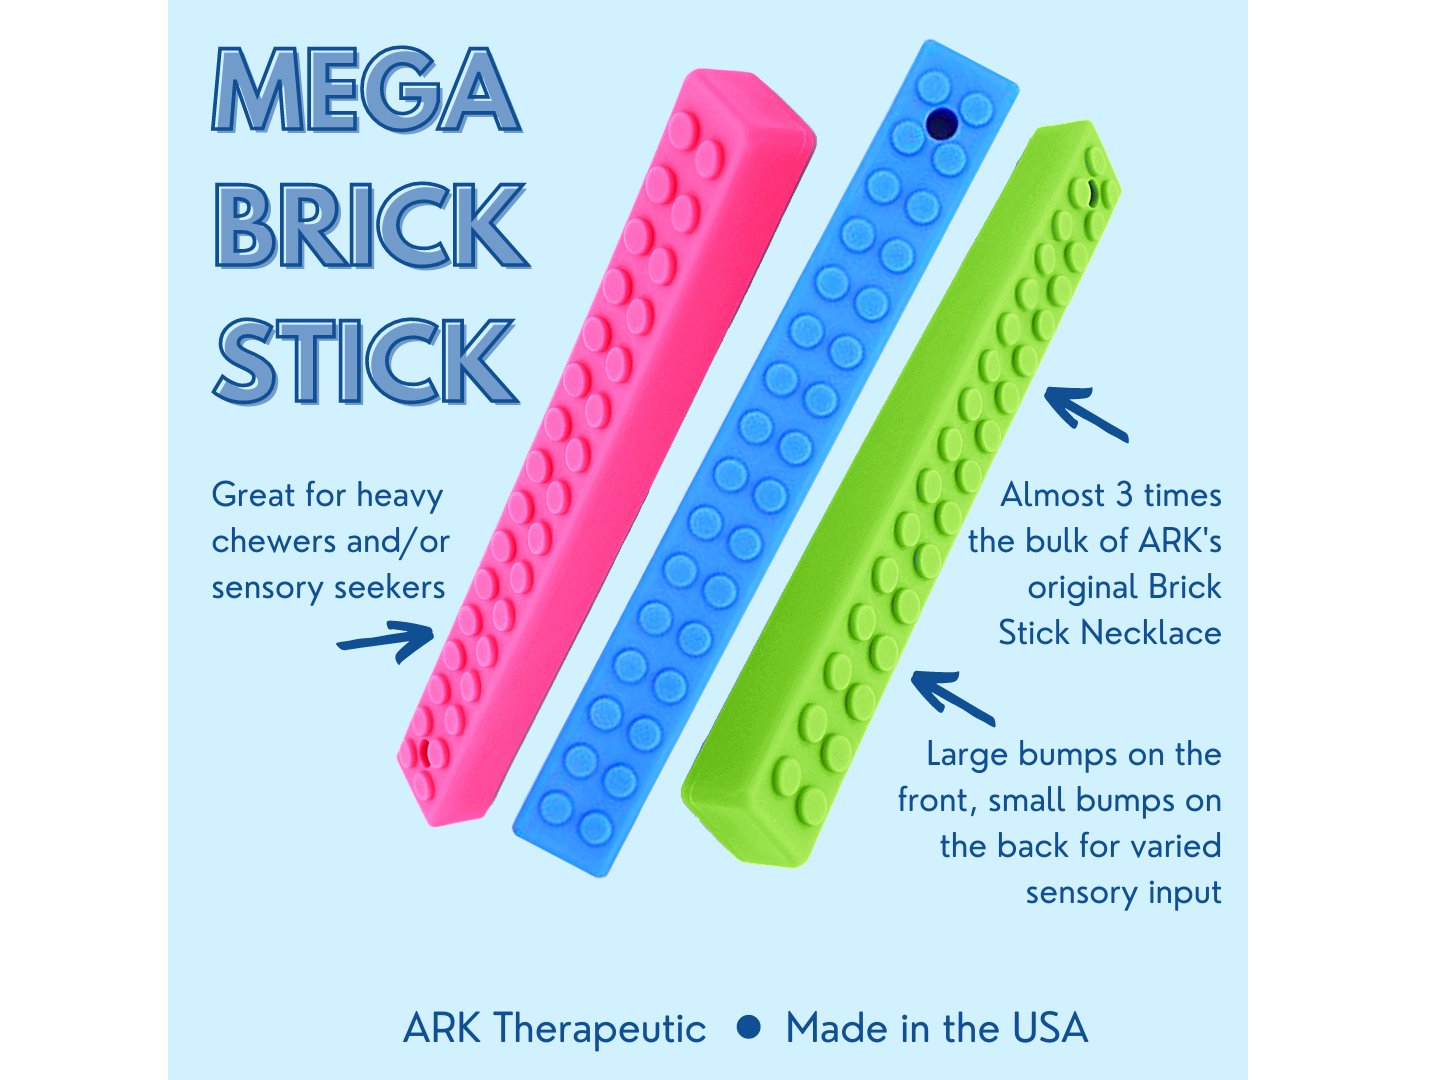 ARK Mega Brick Stick Chew Info